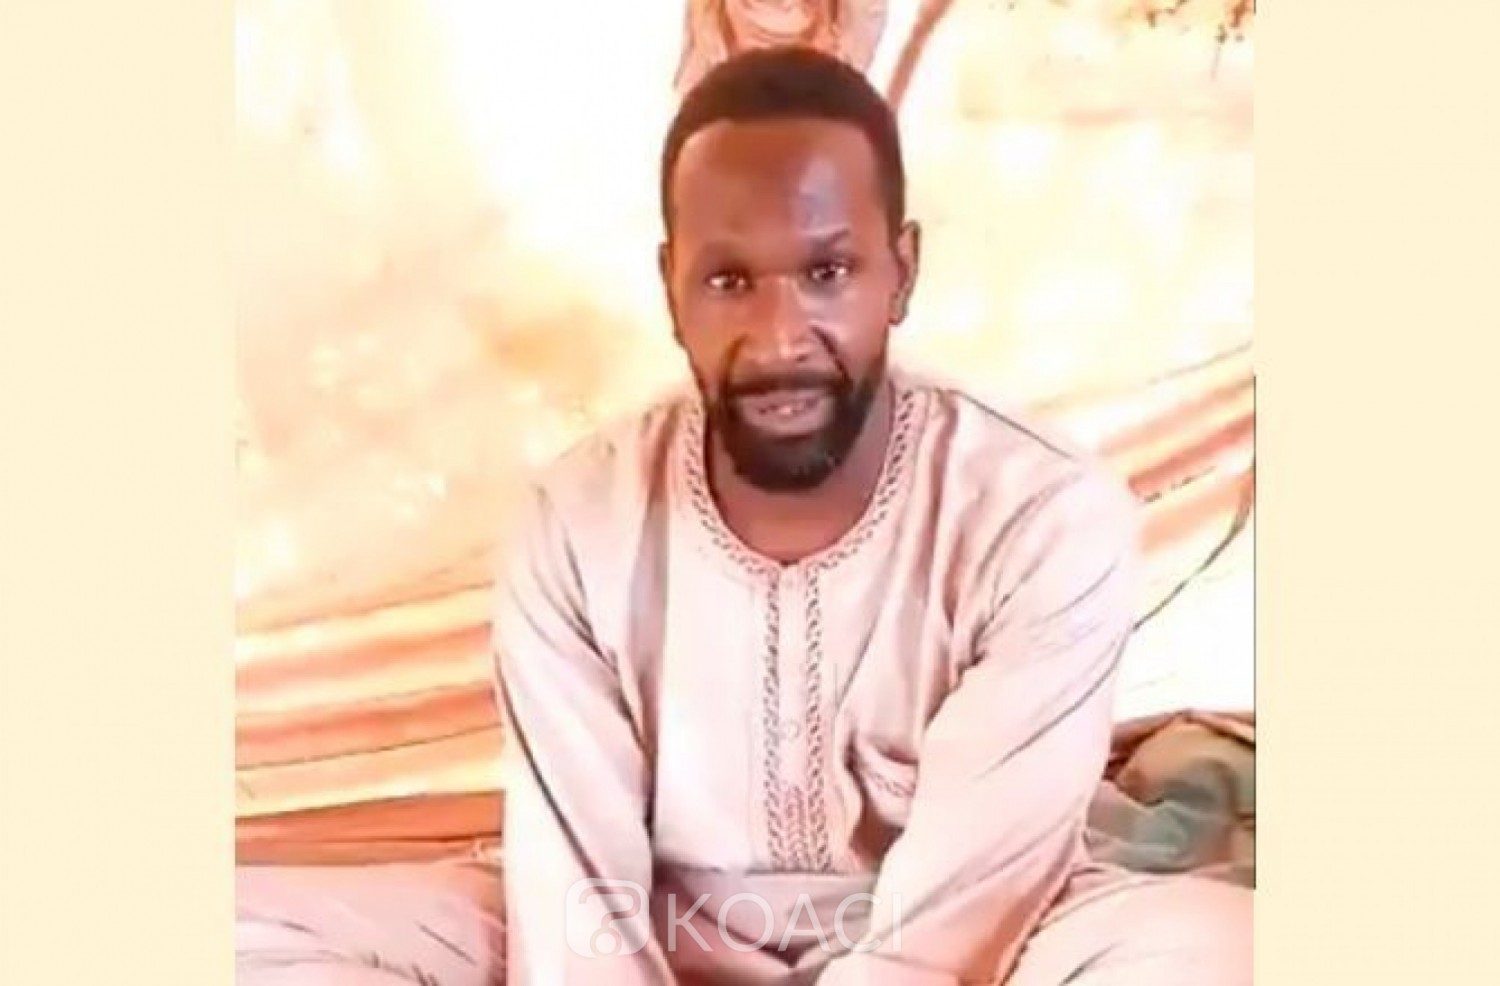 Mali : Enlèvement d' Olivier Dubois, sa famille appelle la France et le Mali à « s'unir» pour sa libération